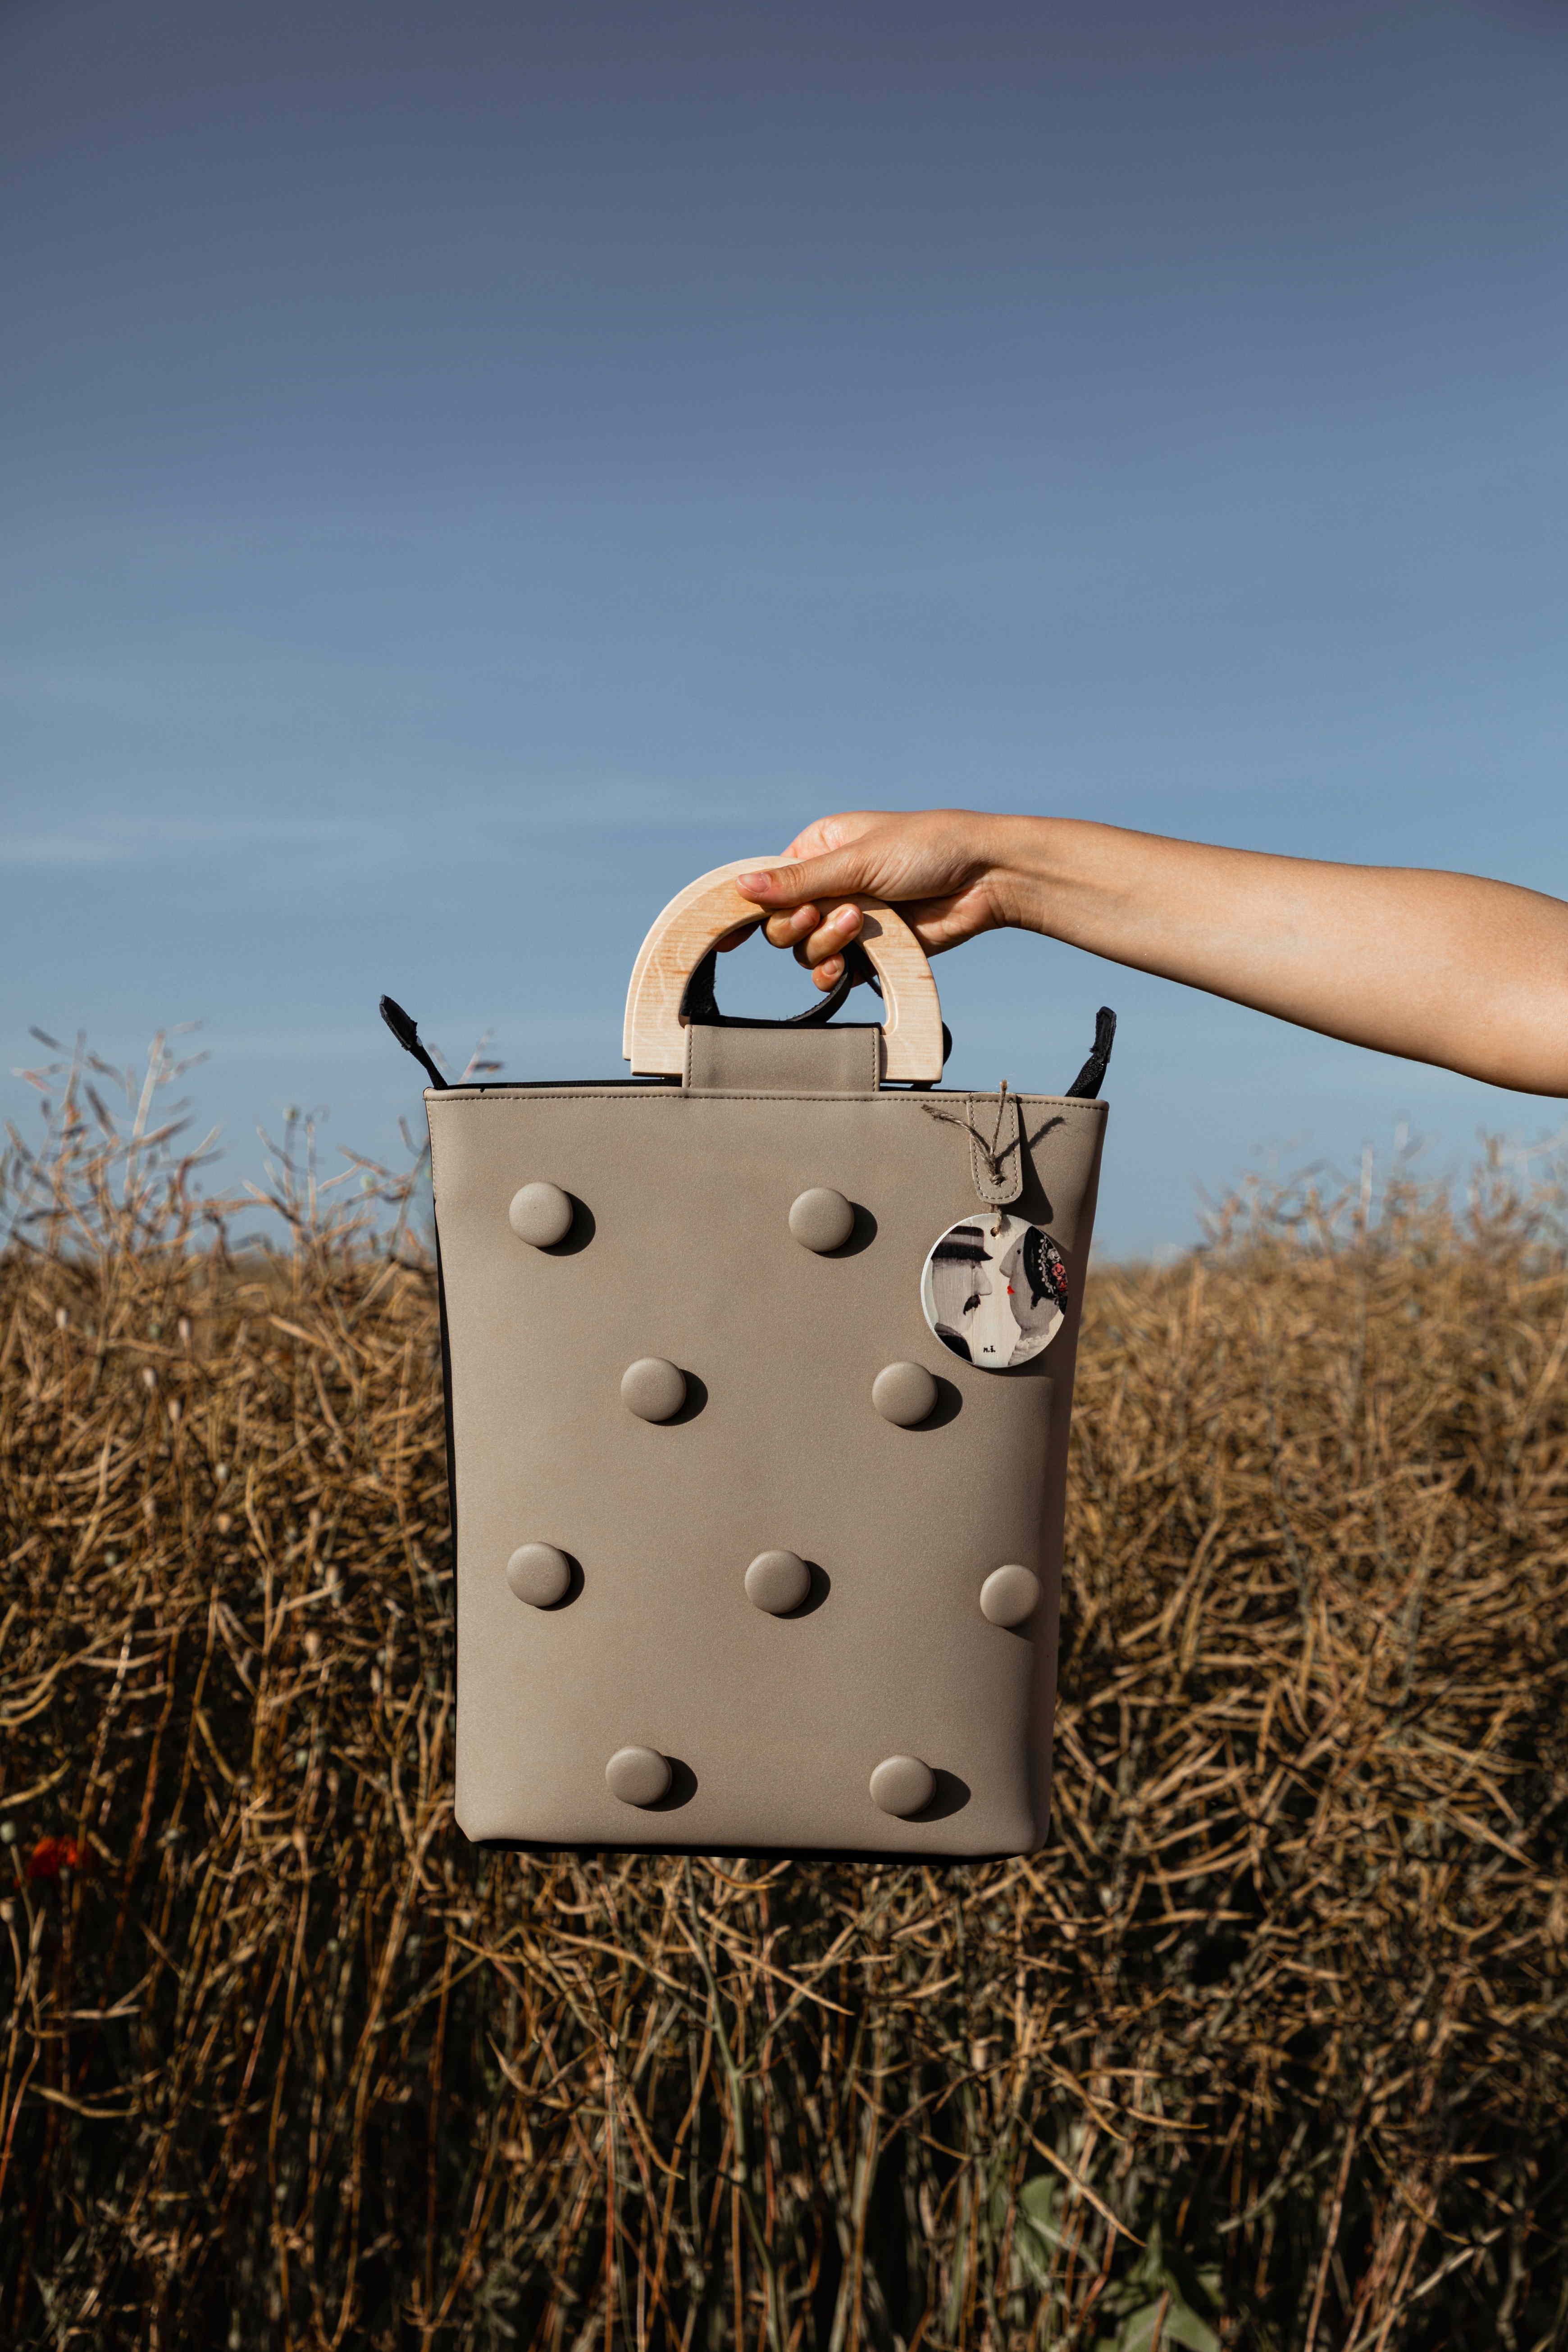 Domaći brand ženskih torbi MIKO predstavio je novu kolekciju SAND